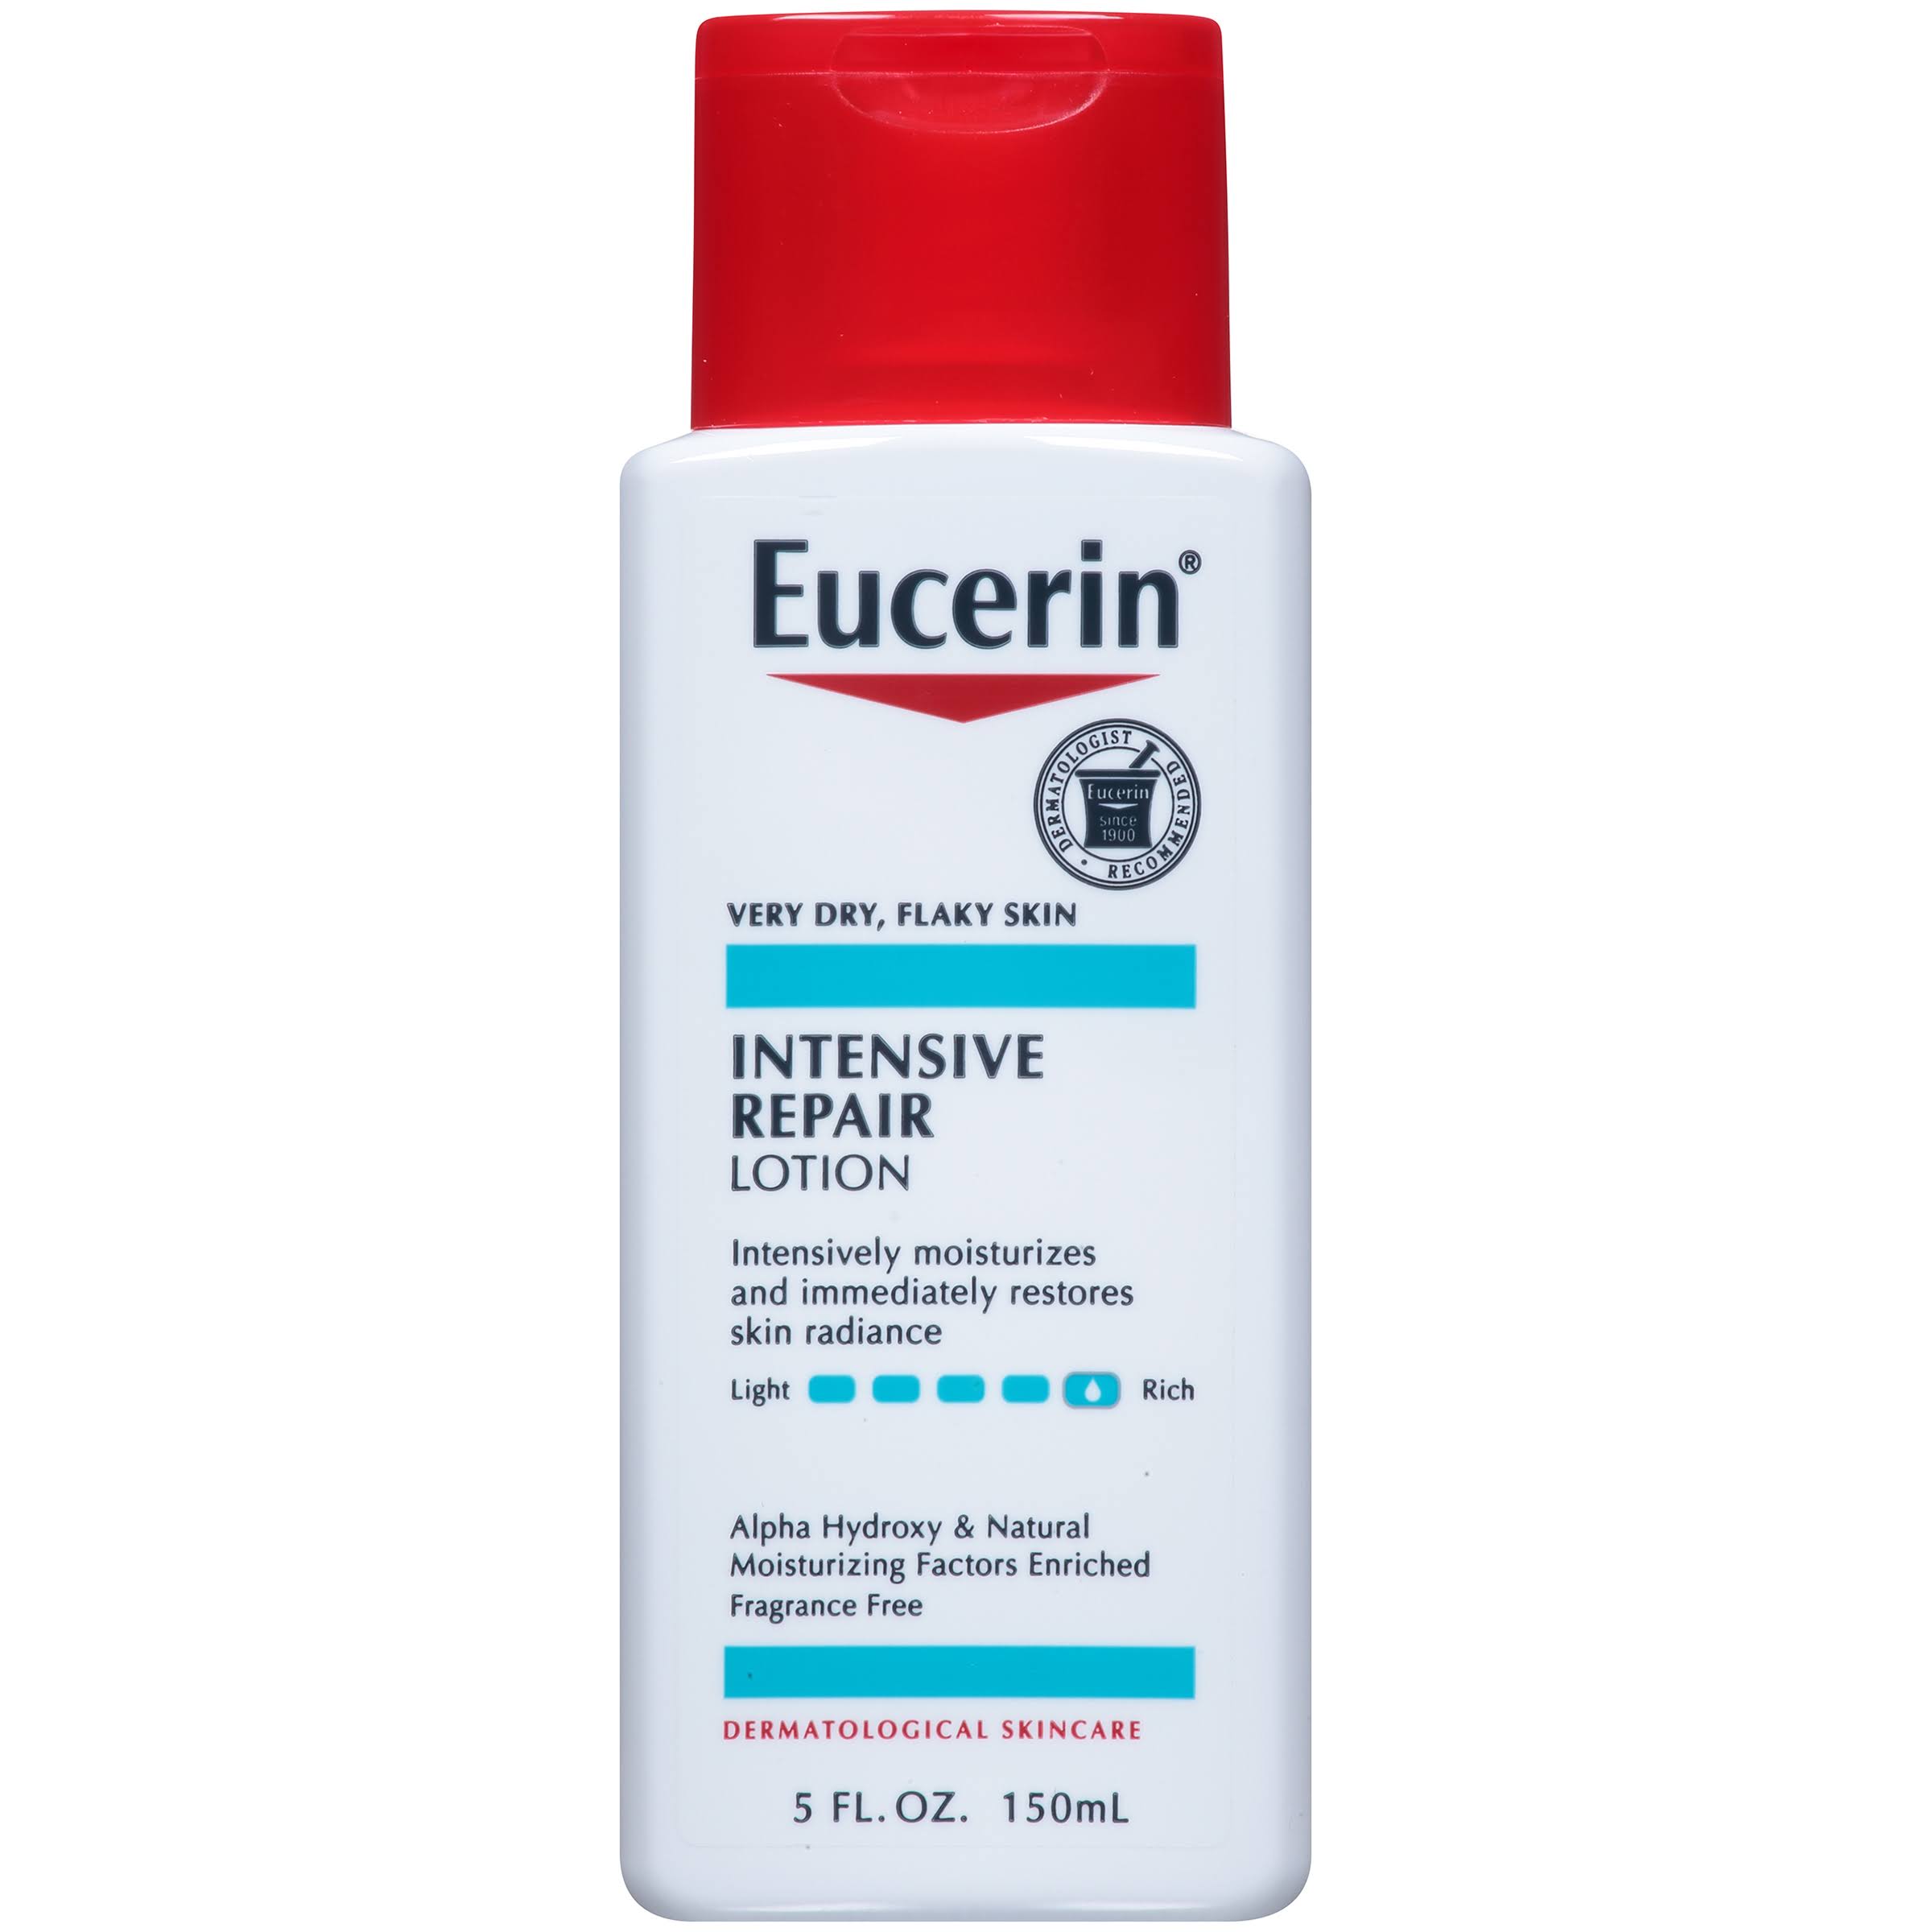 Eucerin Intensive Repair Lotion - 150ml